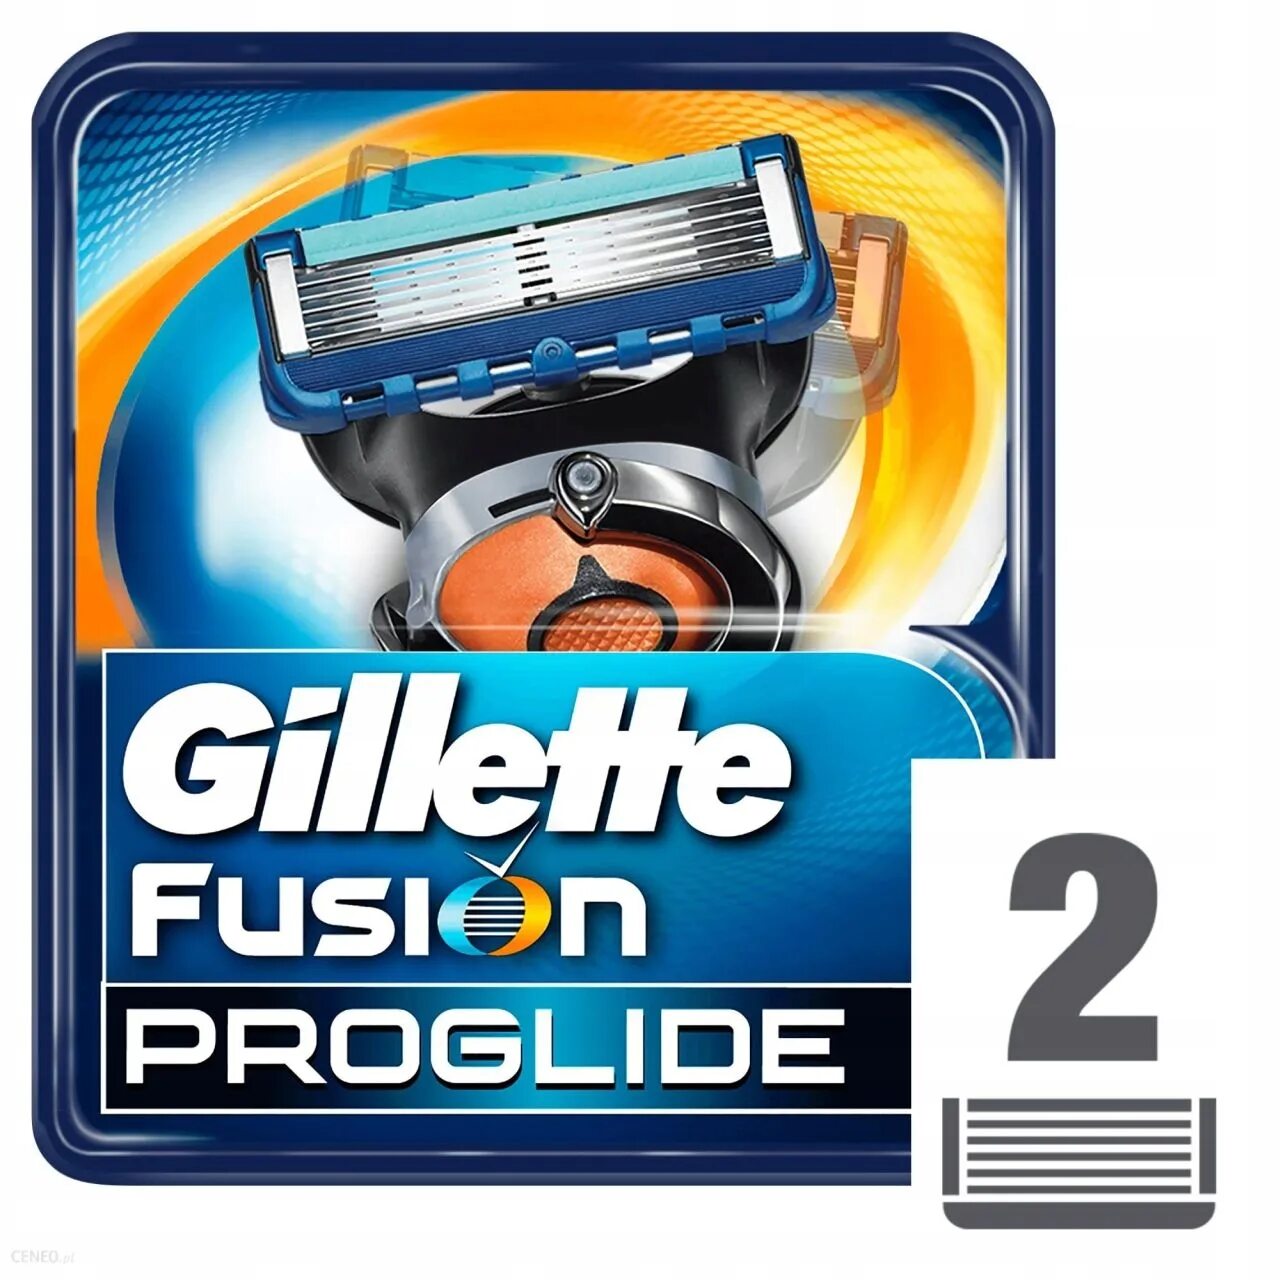 Кассеты для бритья fusion proglide. Джилет Фьюжен Проглайд 5 кассеты. Станки Жиллет Фьюжн 5 Проглайд 6 штук. Кассеты  Fusion PROGLIDE  -6 шт..